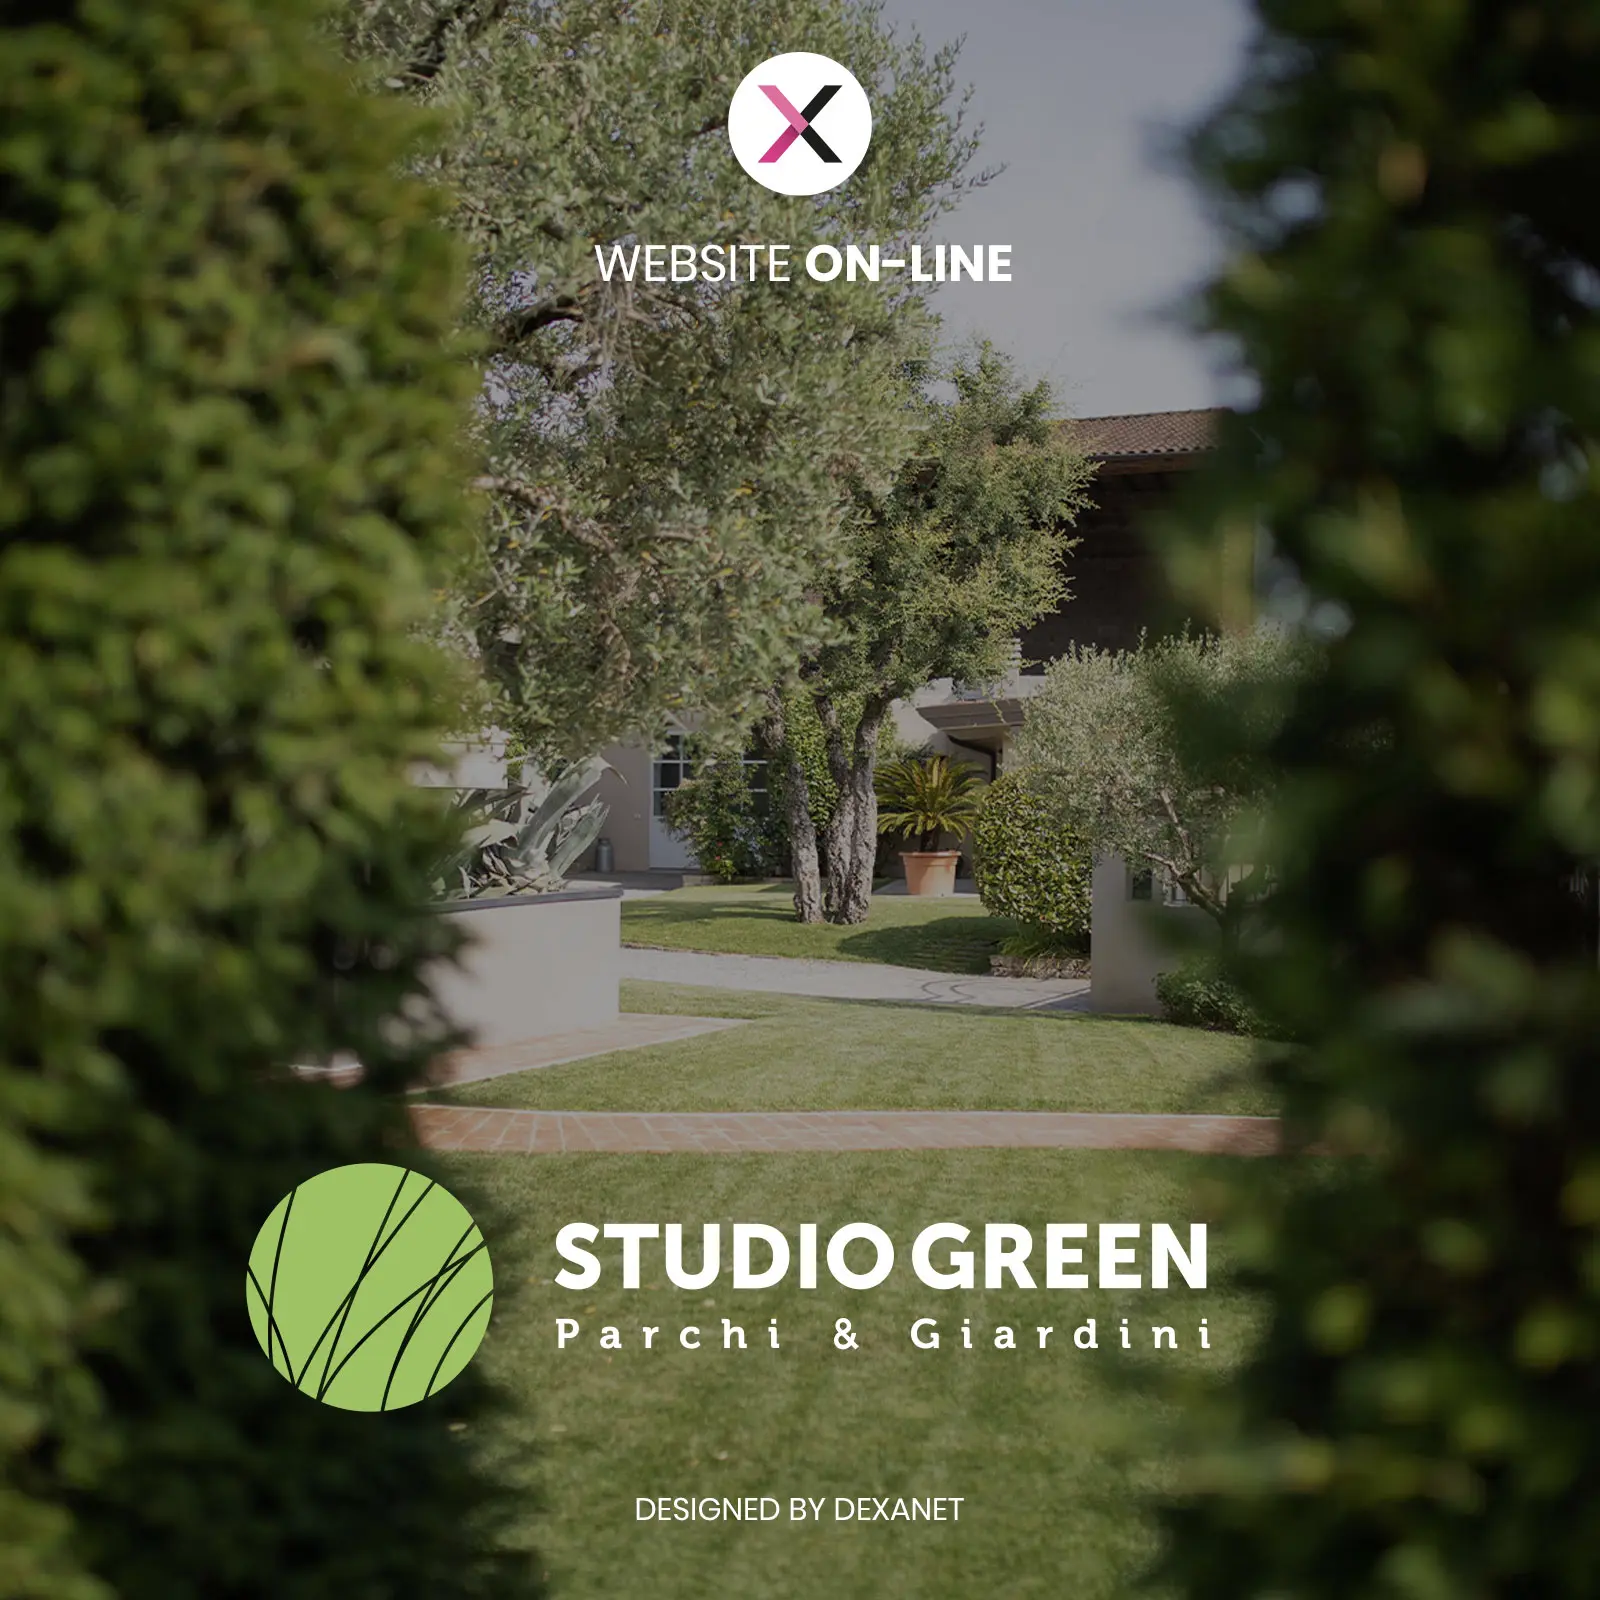 Una piattaforma rigogliosa: la realizzazione del sito web per i giardinieri di Studio Green.